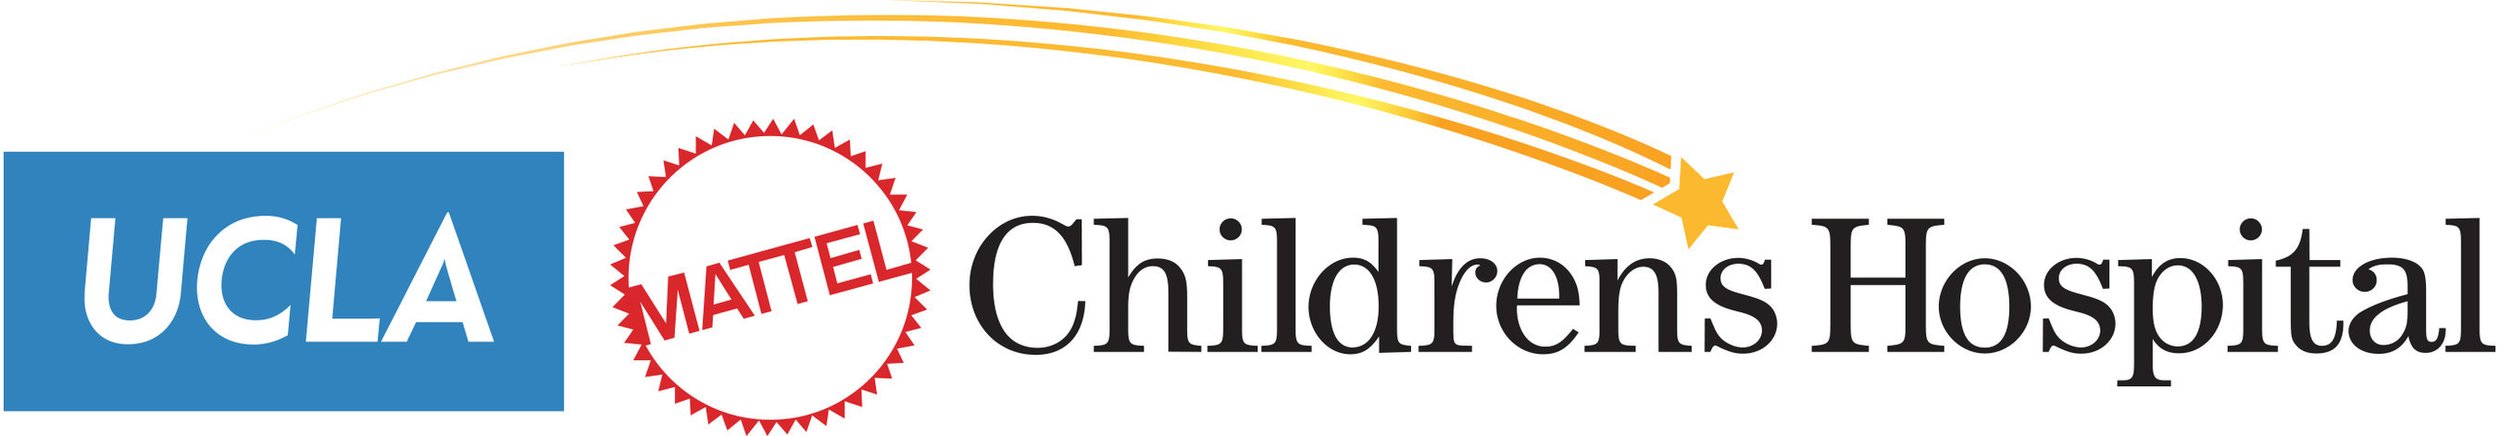 UCLA Mattel Children's Hospital logo.jpg